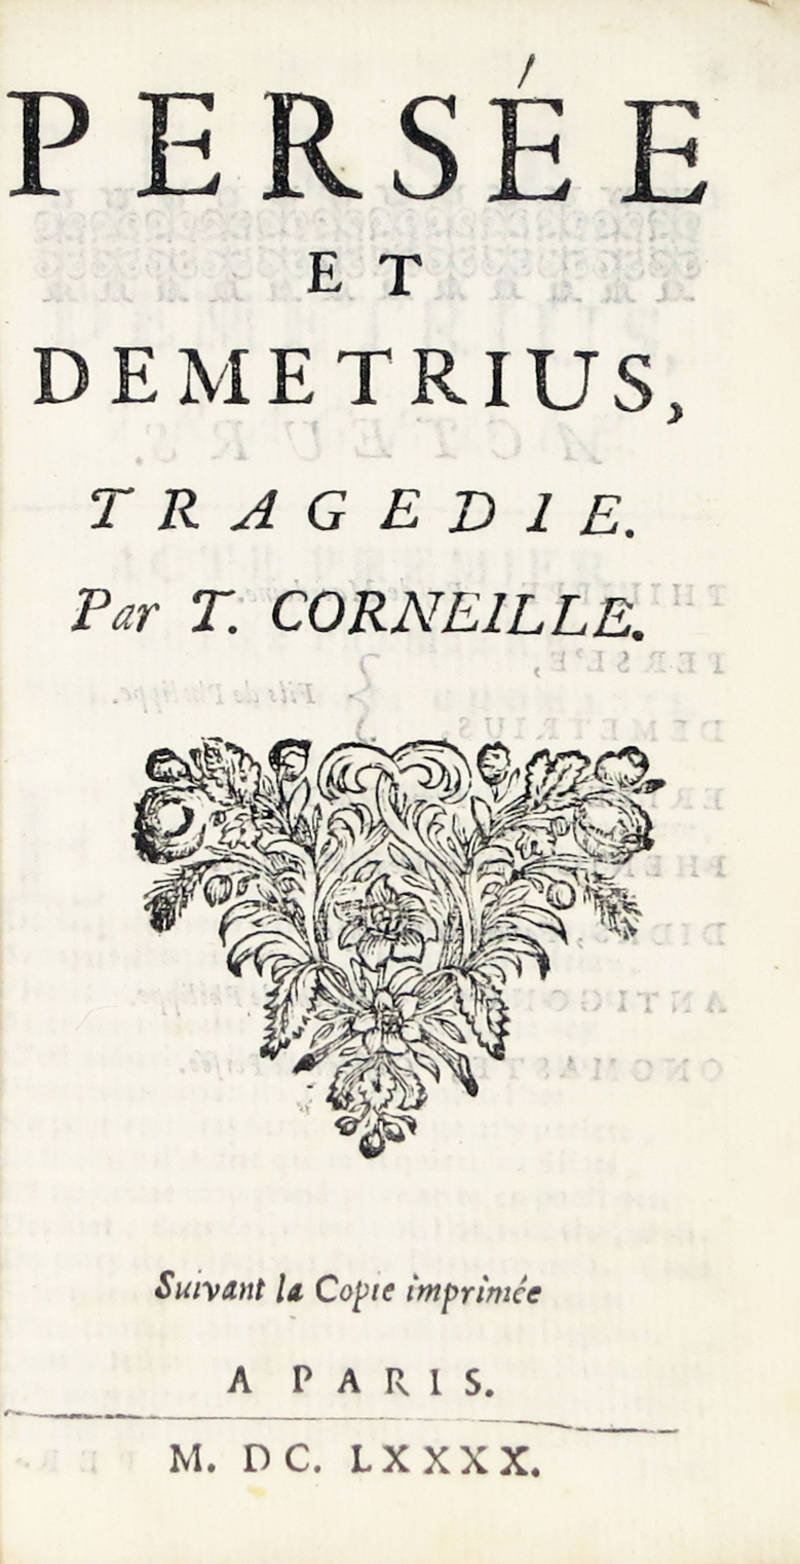 Persée et Demetrius, tragédie. Suivant la Copie imprimée a Paris, M.DC.LXXXX (1690).